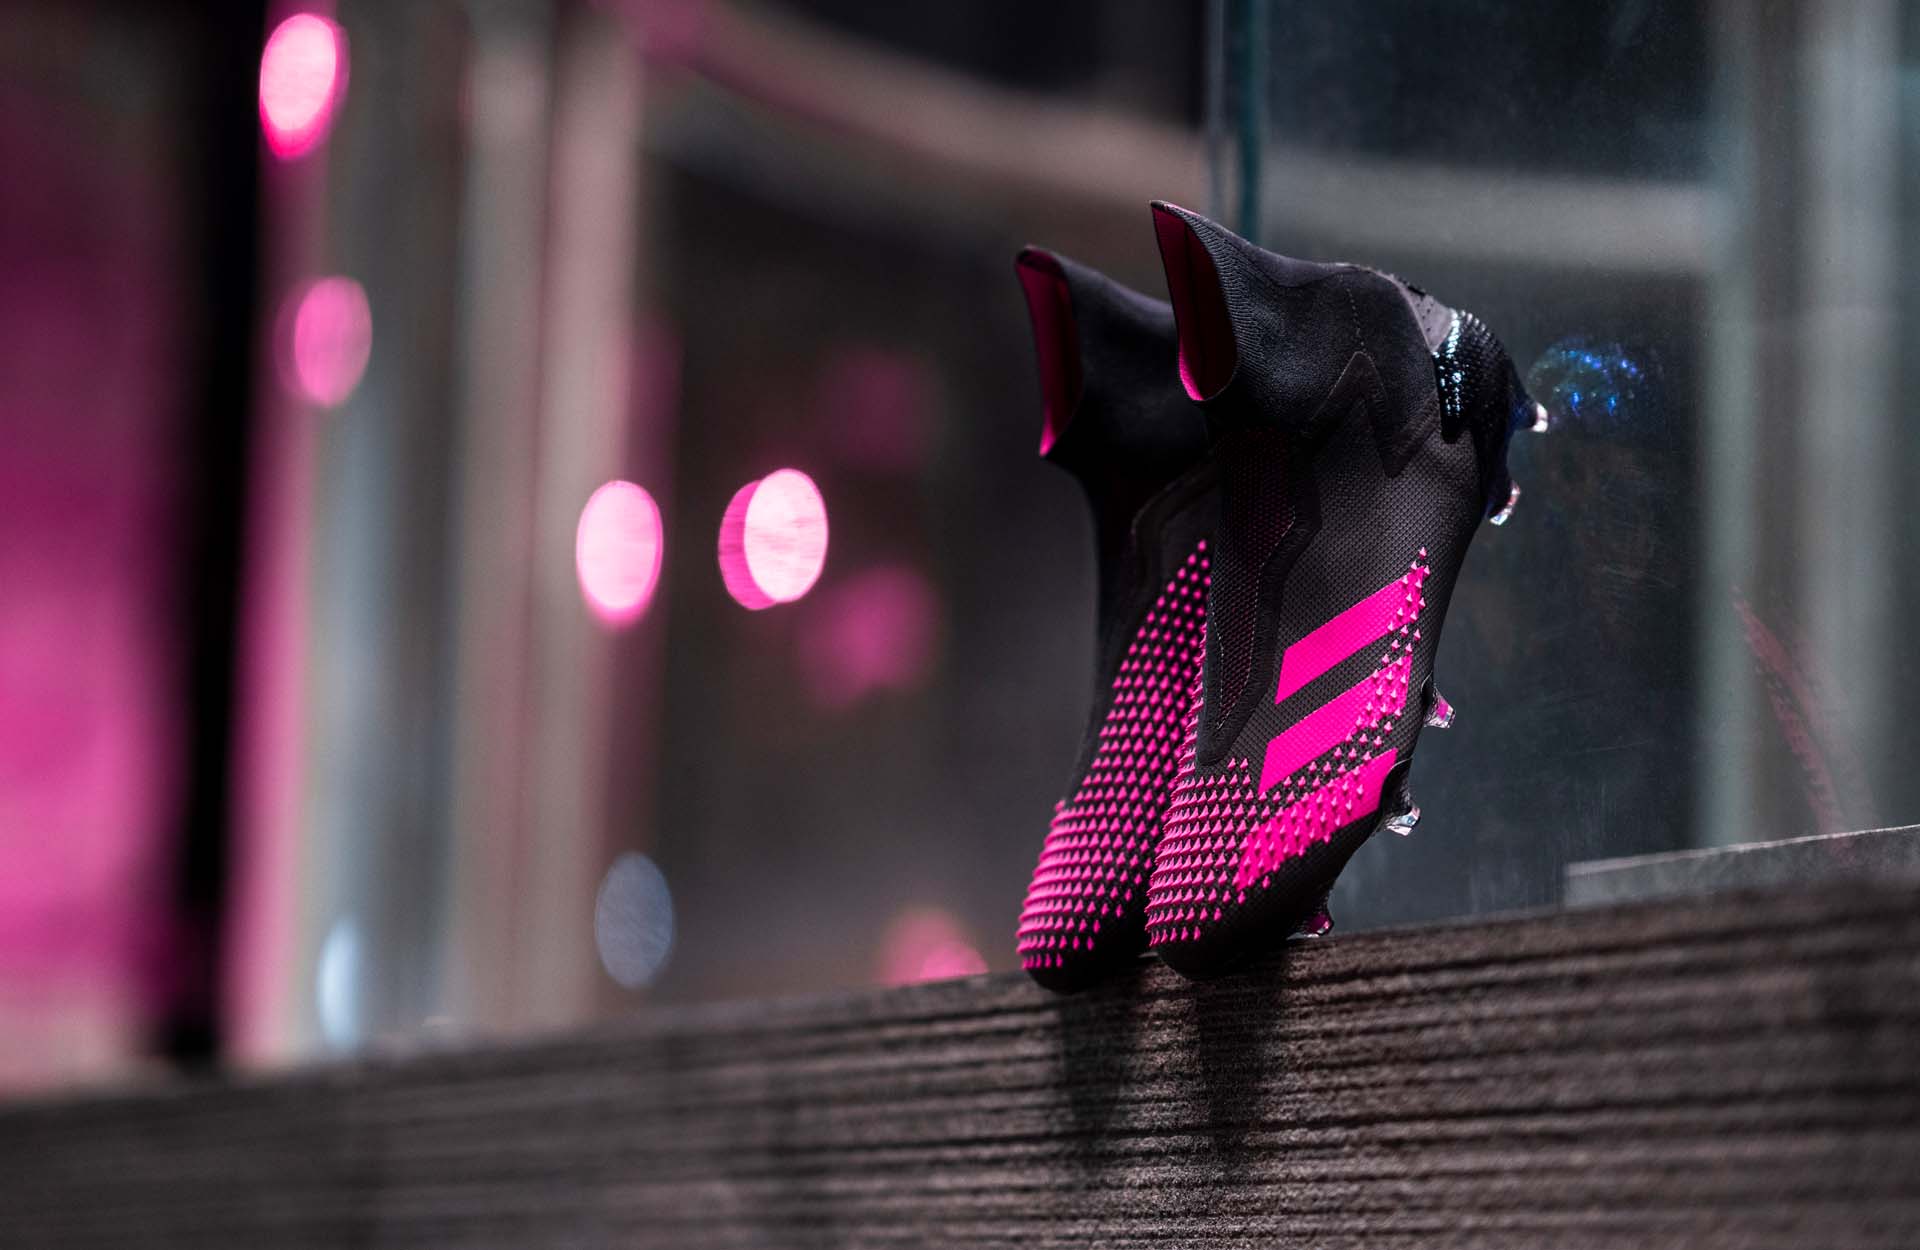 Thiết kế độc quyền của Pro: Direct Soccer đặc biệt với phối màu "Black/Fluro Pink"